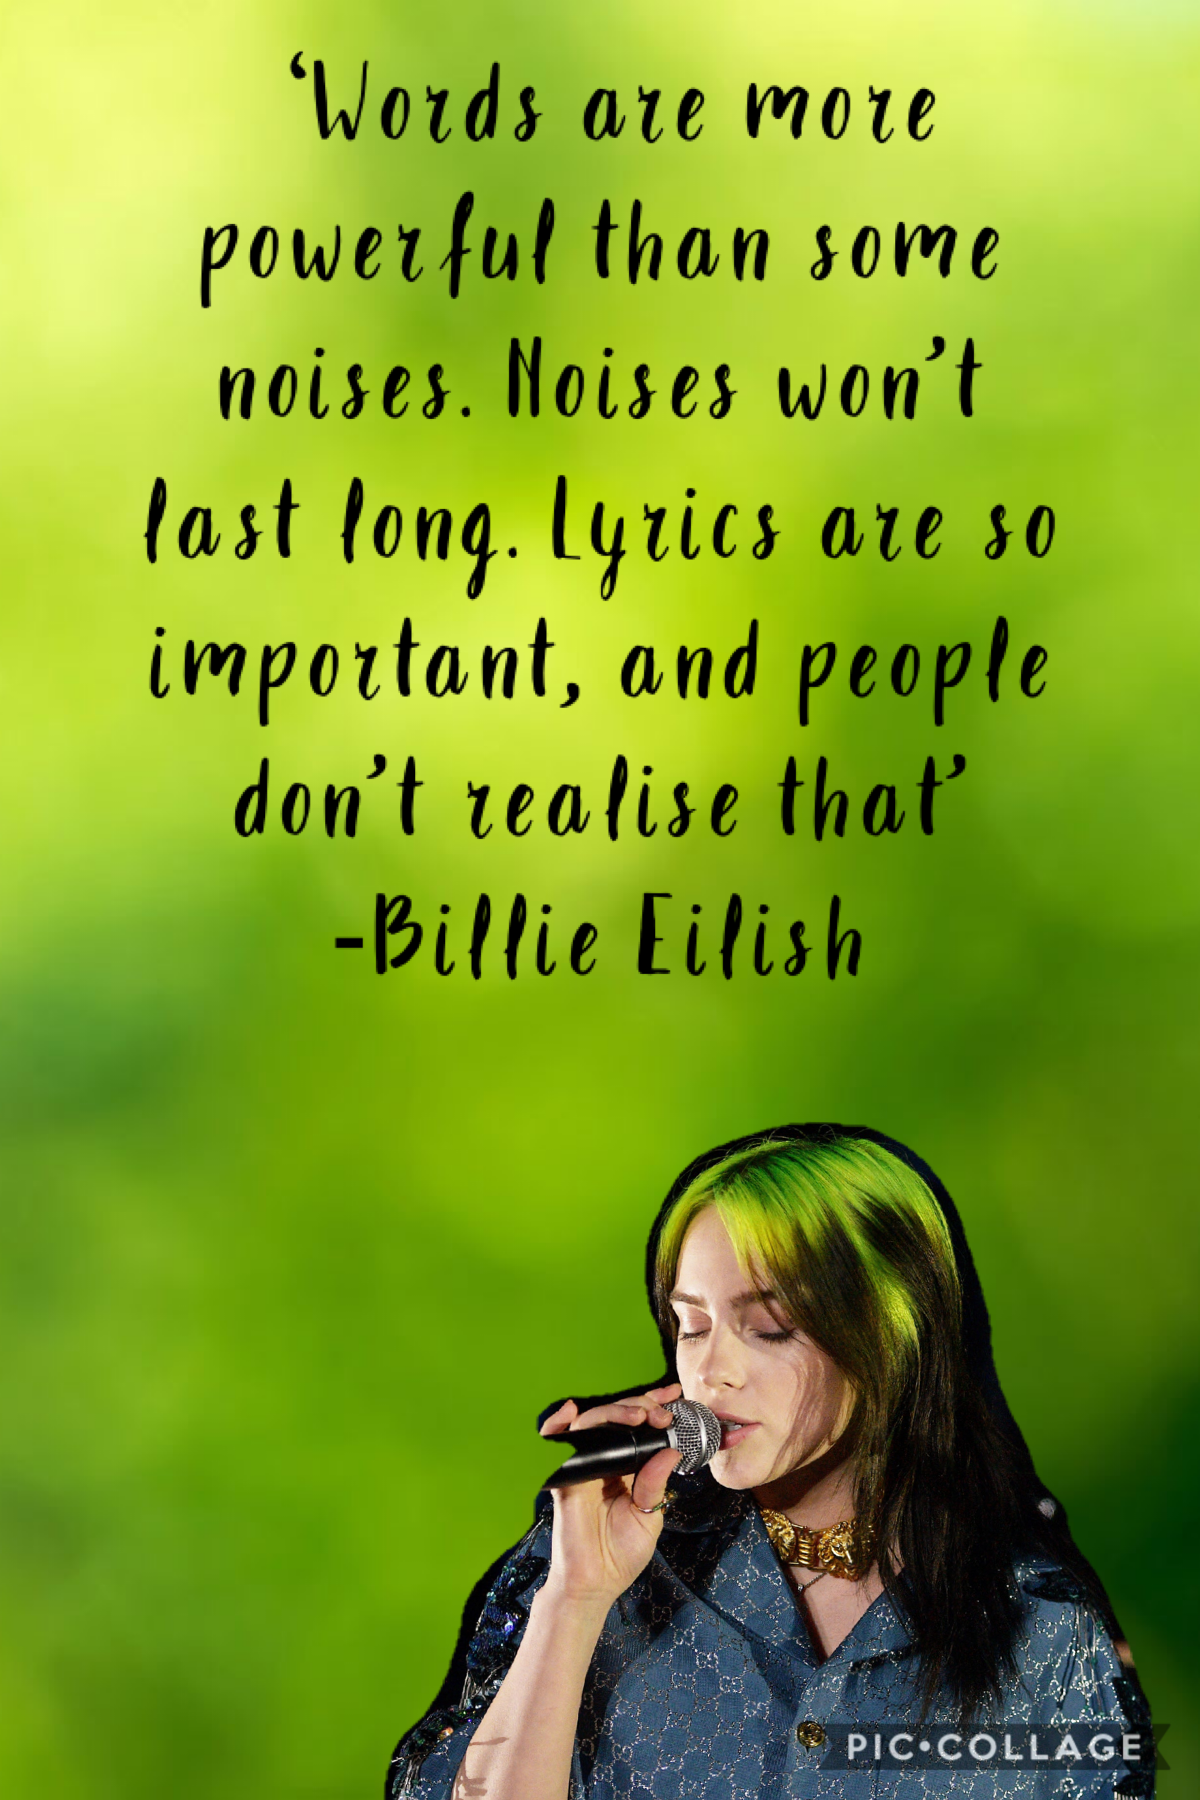 Billie eilish quote #2